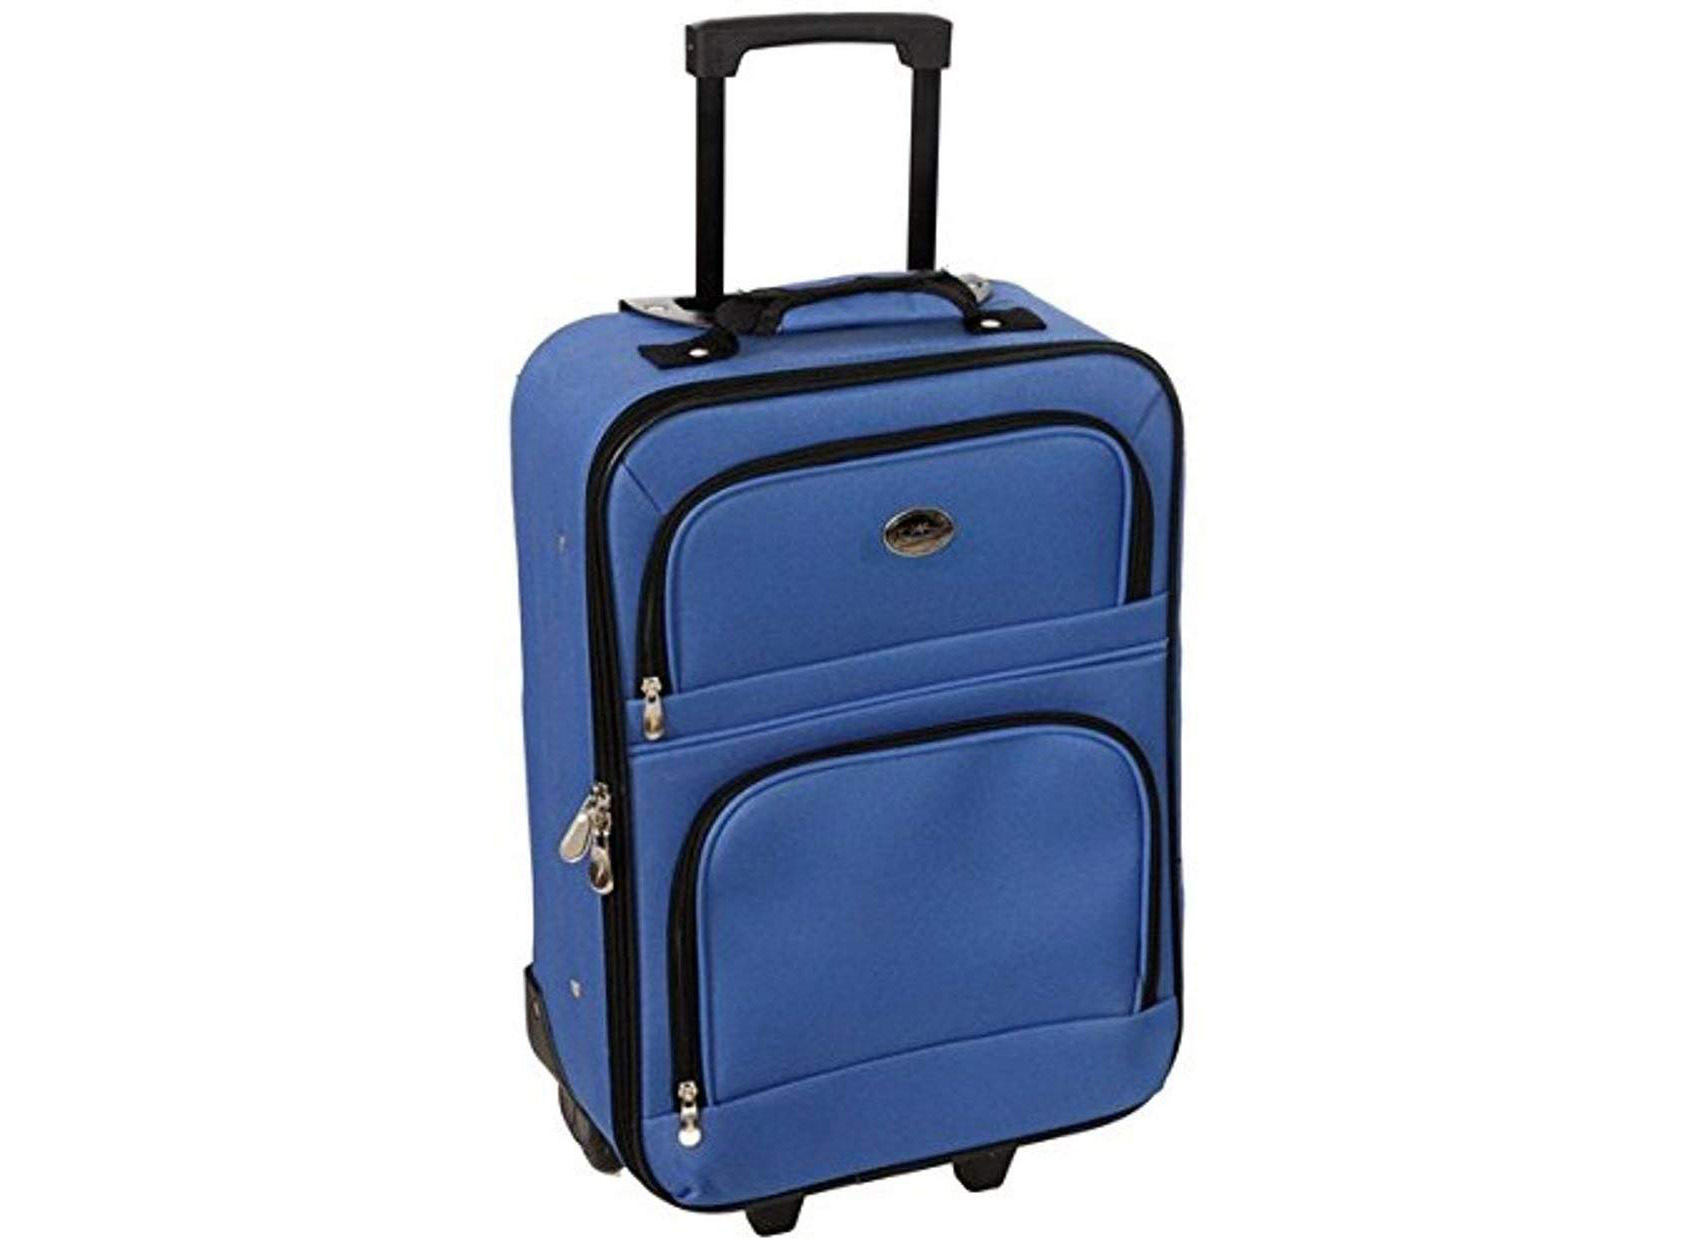 El mejor equipaje liviano: 10 bolsas de mano por debajo de 6 libras - 13